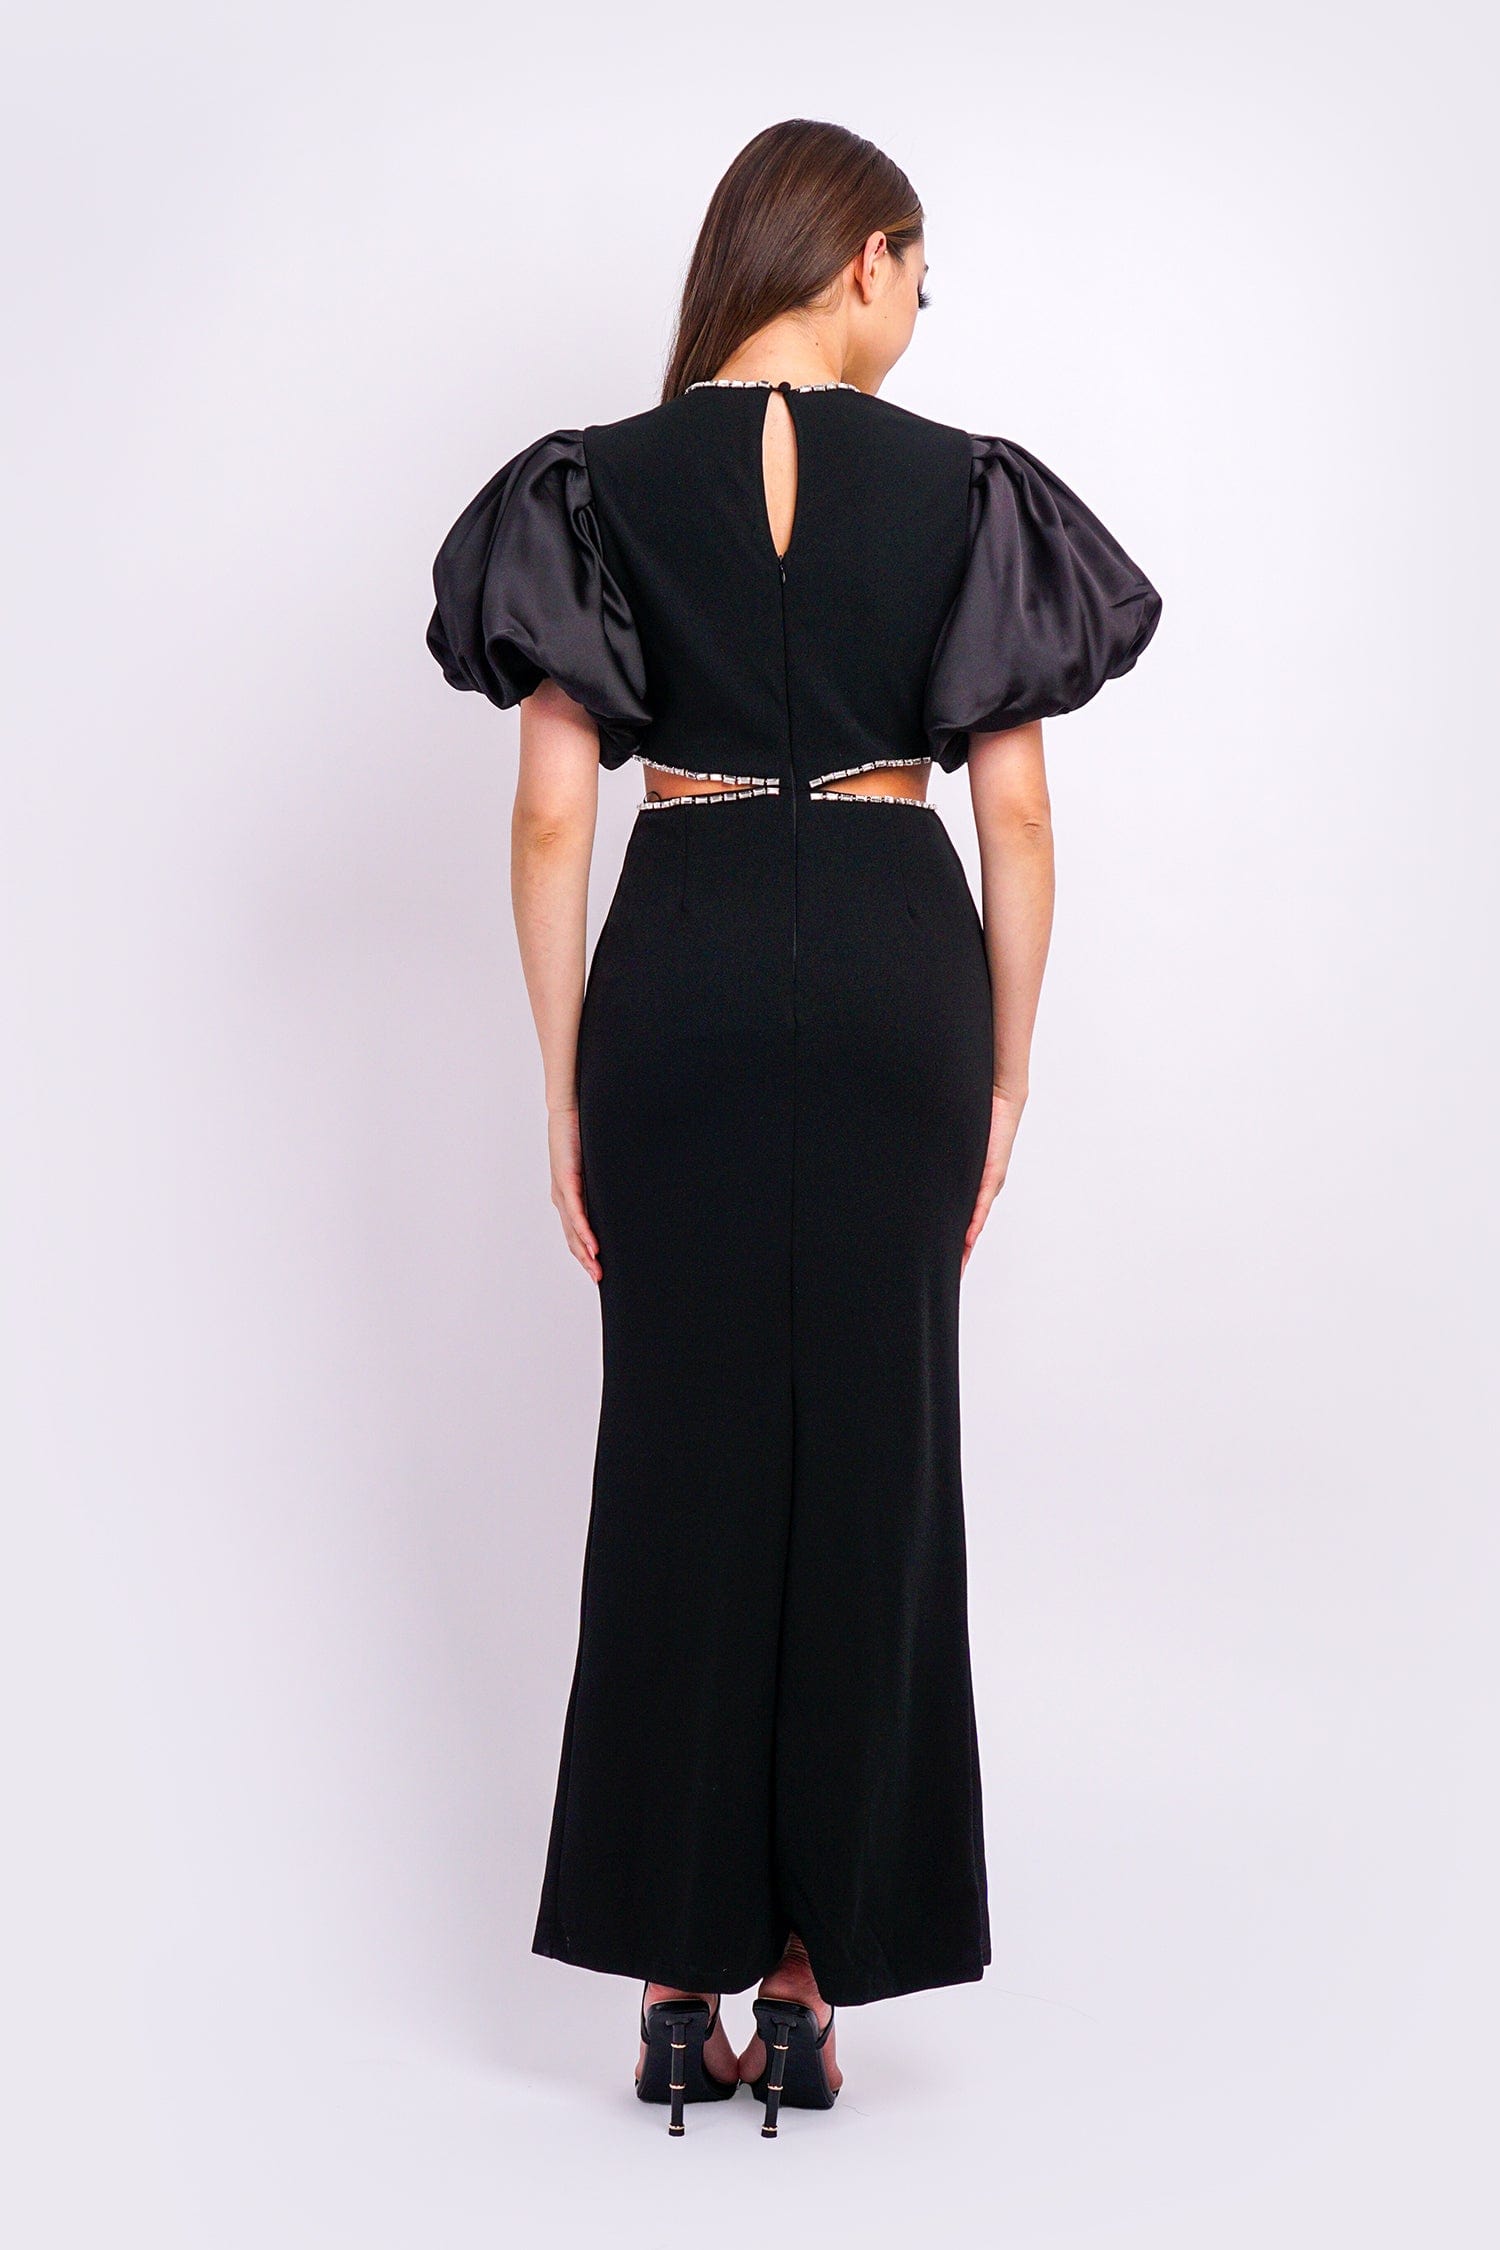 DCD Gowns Black Puff Slv Rhinestone Side Cutout Gown